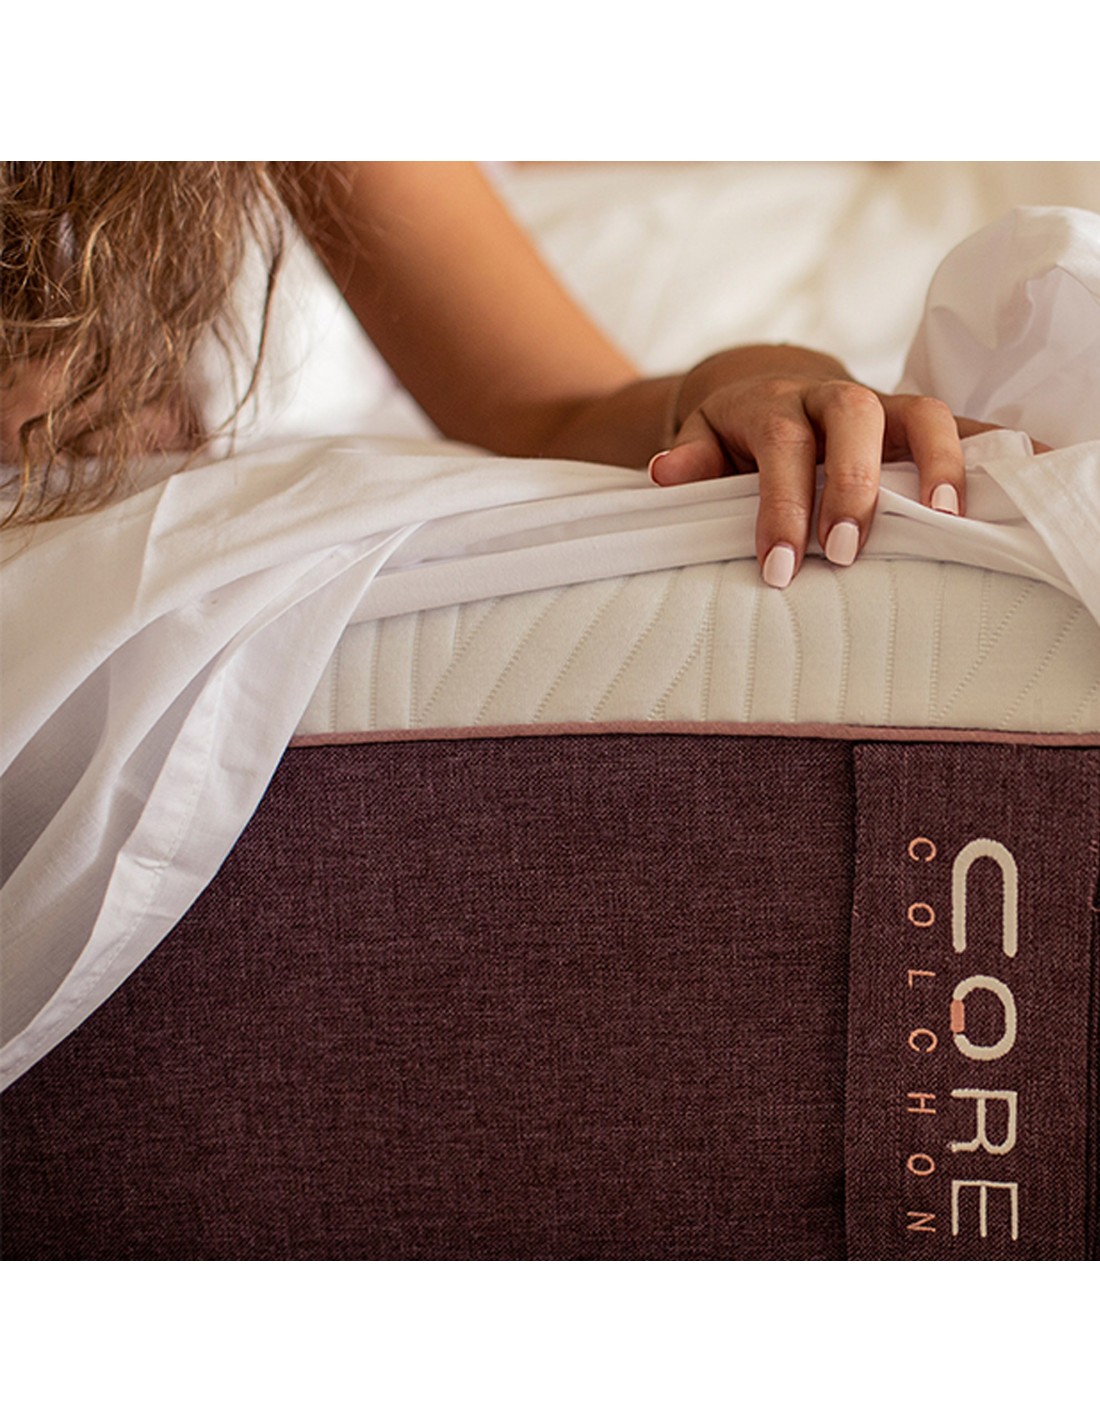 La importancia de la funda colchón - Colchón Exprés